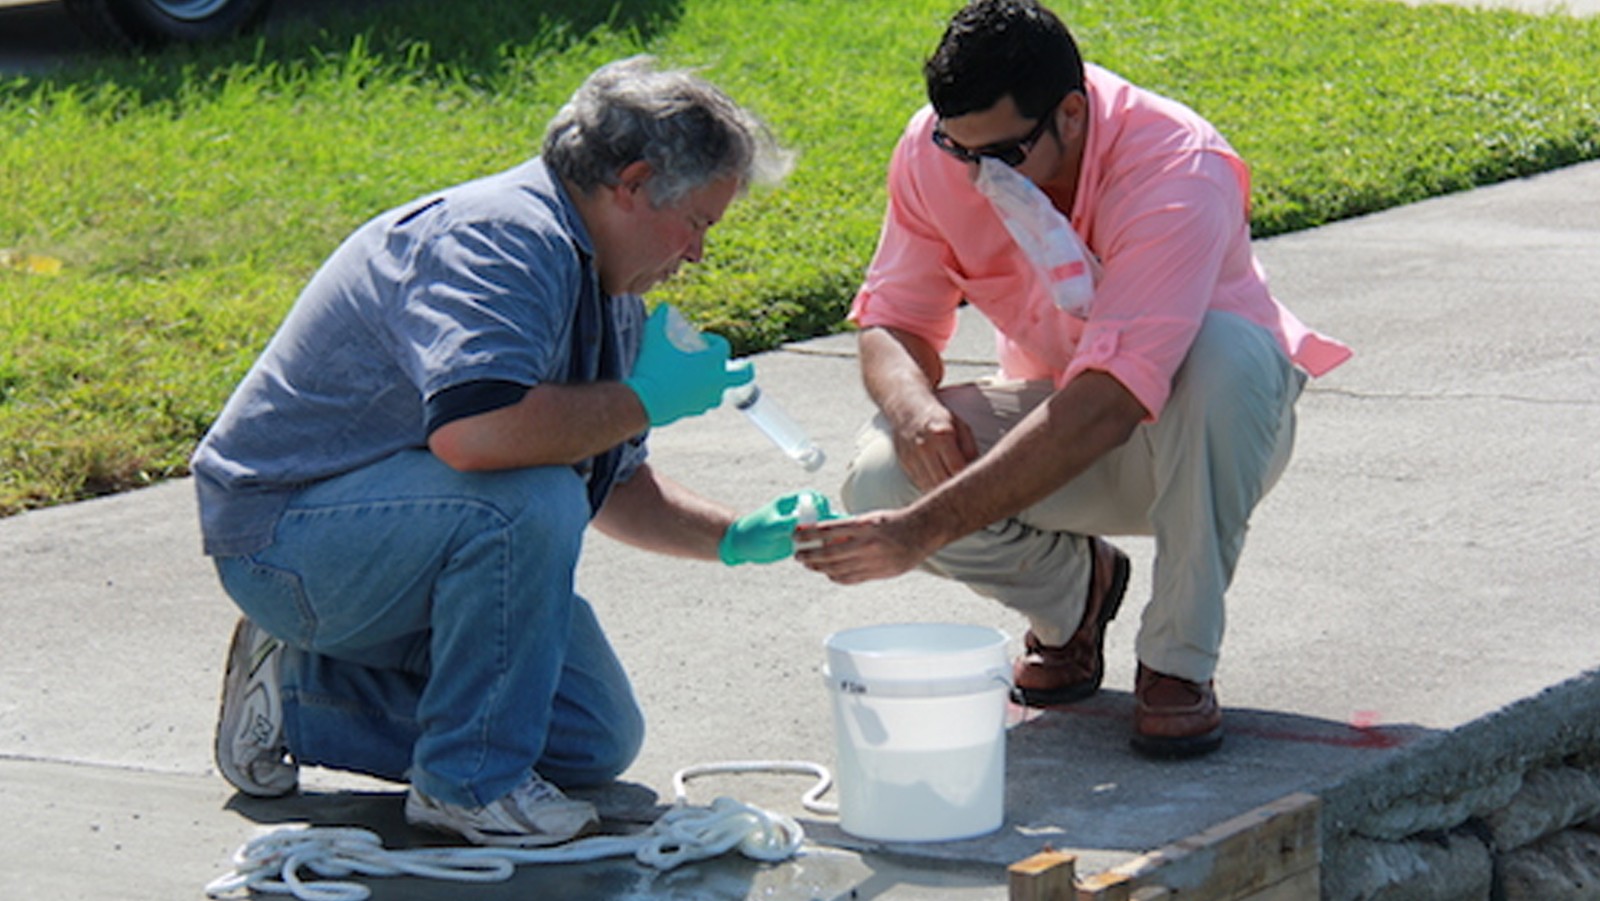 Los científicos recogen muestras de agua en el Parque Maurice Gibb Memorial durante la marea anual del Rey. Crédito de la imagen: NOAA